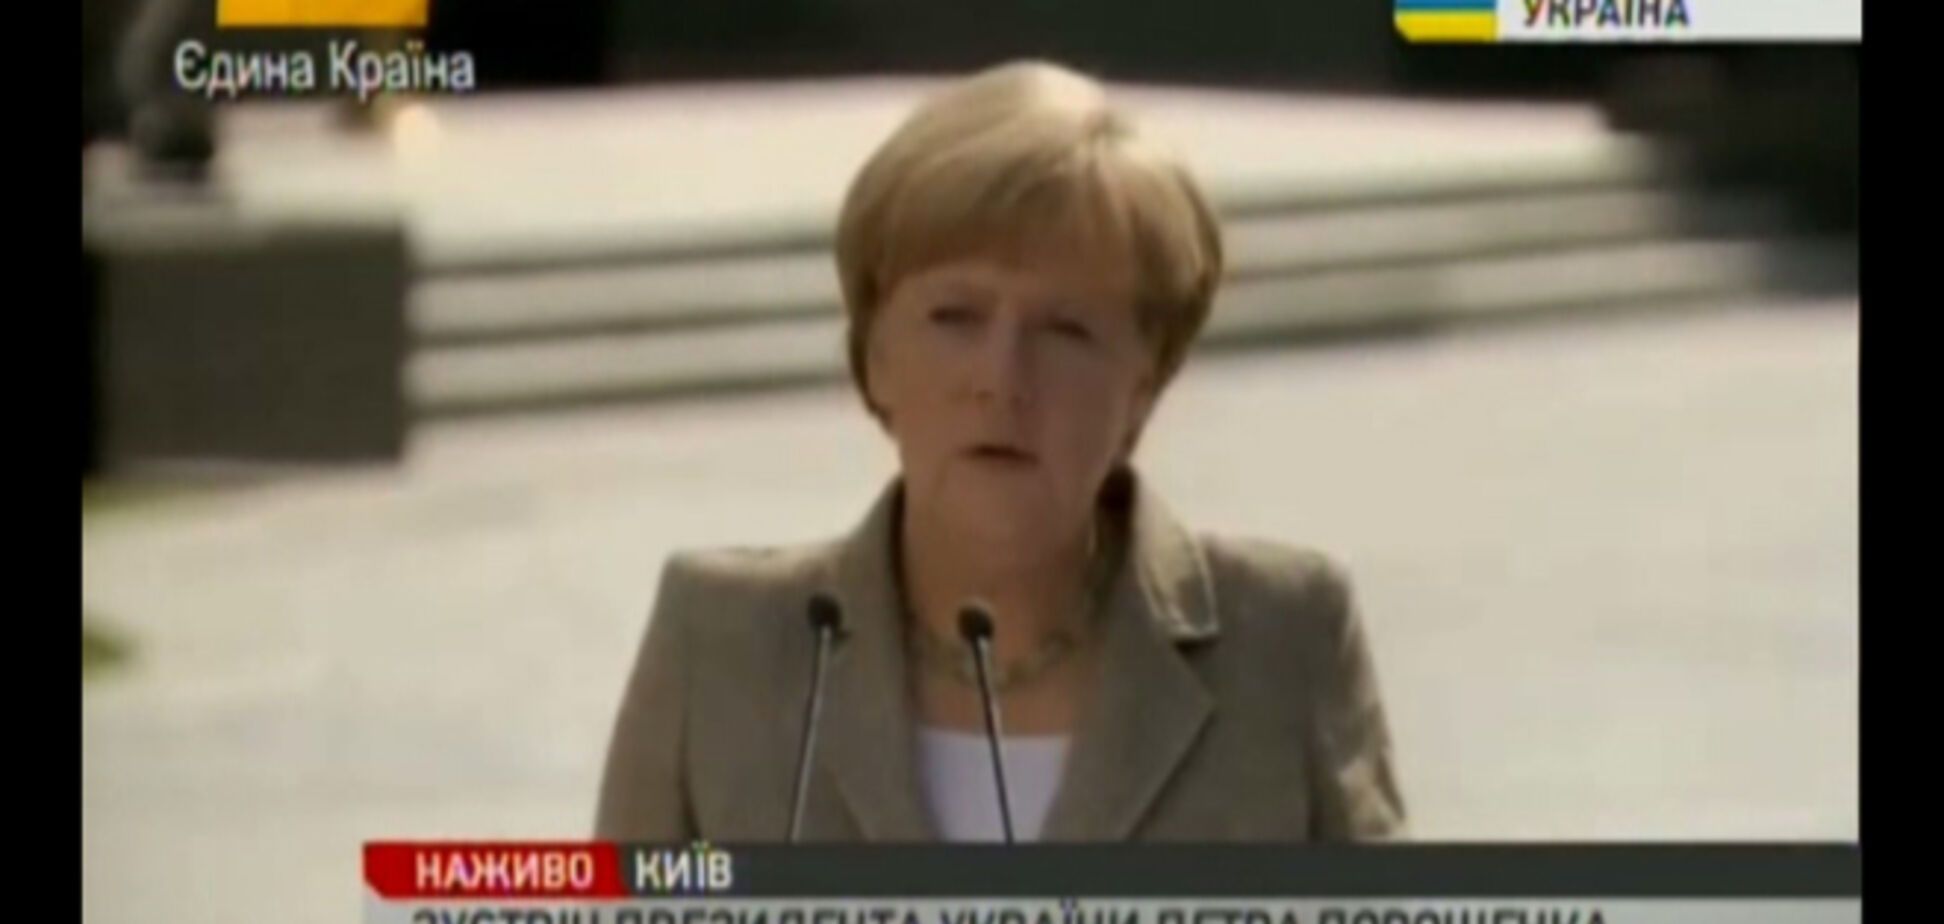 Меркель поставила знак равенства между немецкой федерализацией и украинской децентрализацией